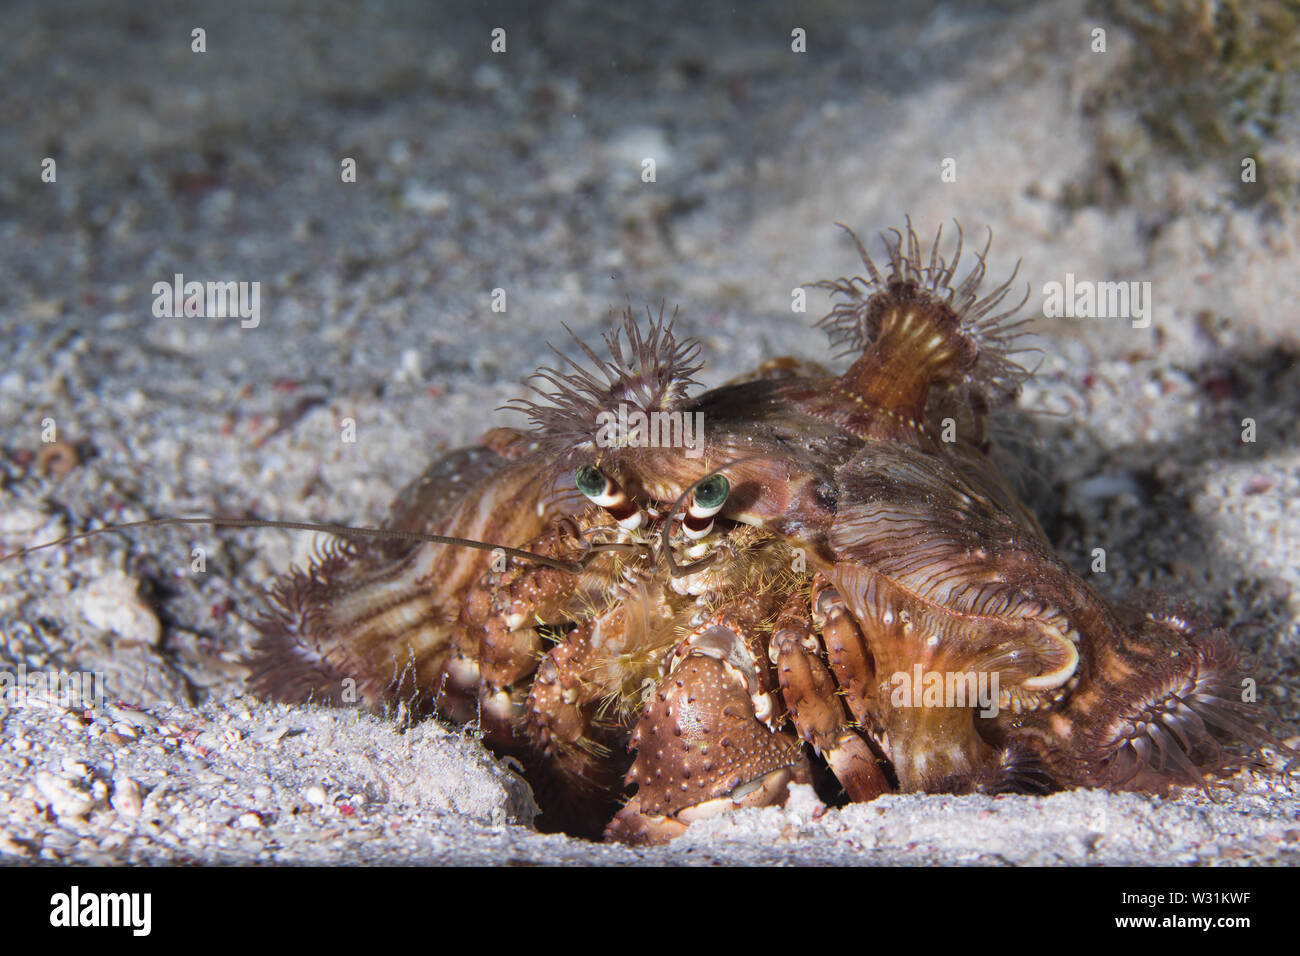 Red Sea anemone Hermit Crab (Dardanus tinctor) mit Einsiedlerkrebs Anemonen (Calliactis polypus) auf dem sandigen Boden abgedeckt. Stockfoto